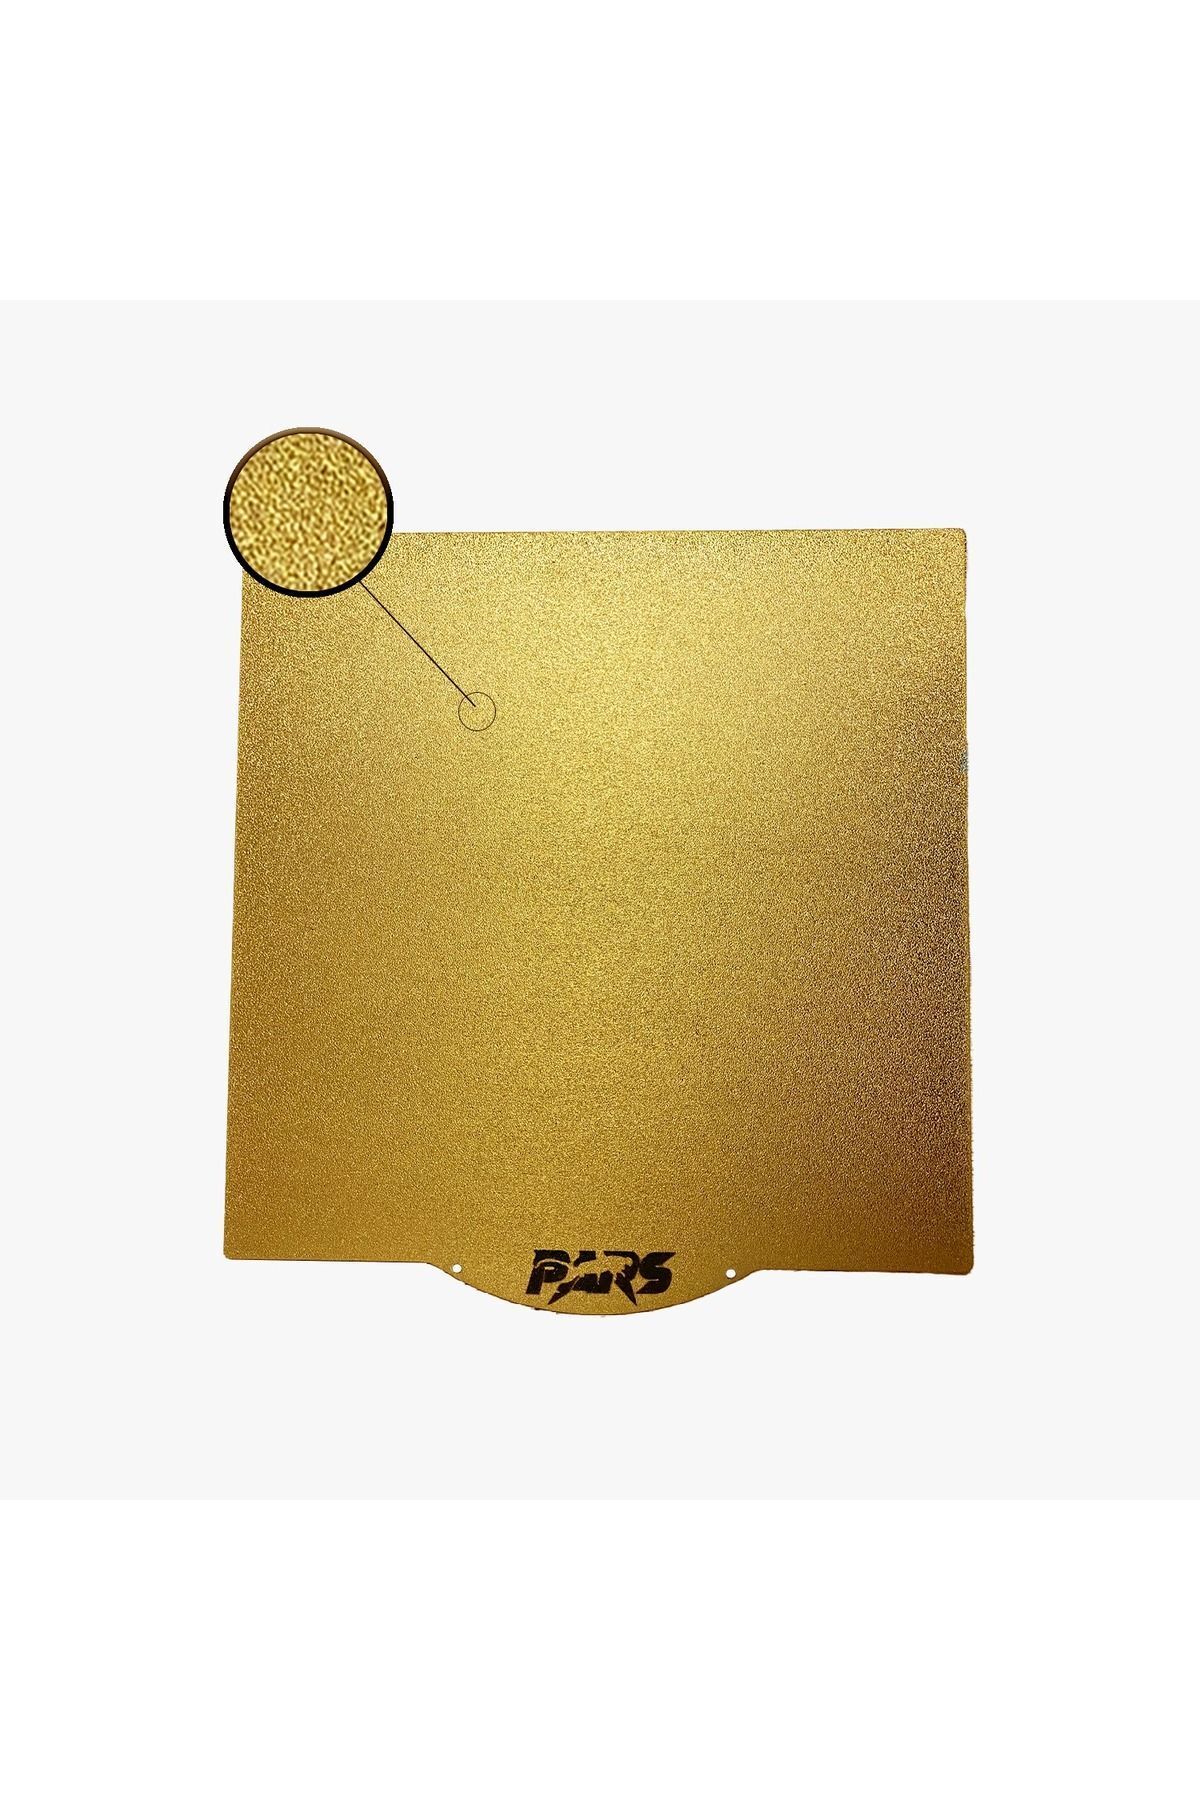 Pars 335x365 MM Pars Gold Pei Kaplı Özel Yay Çeliği Tabla Magnetsiz